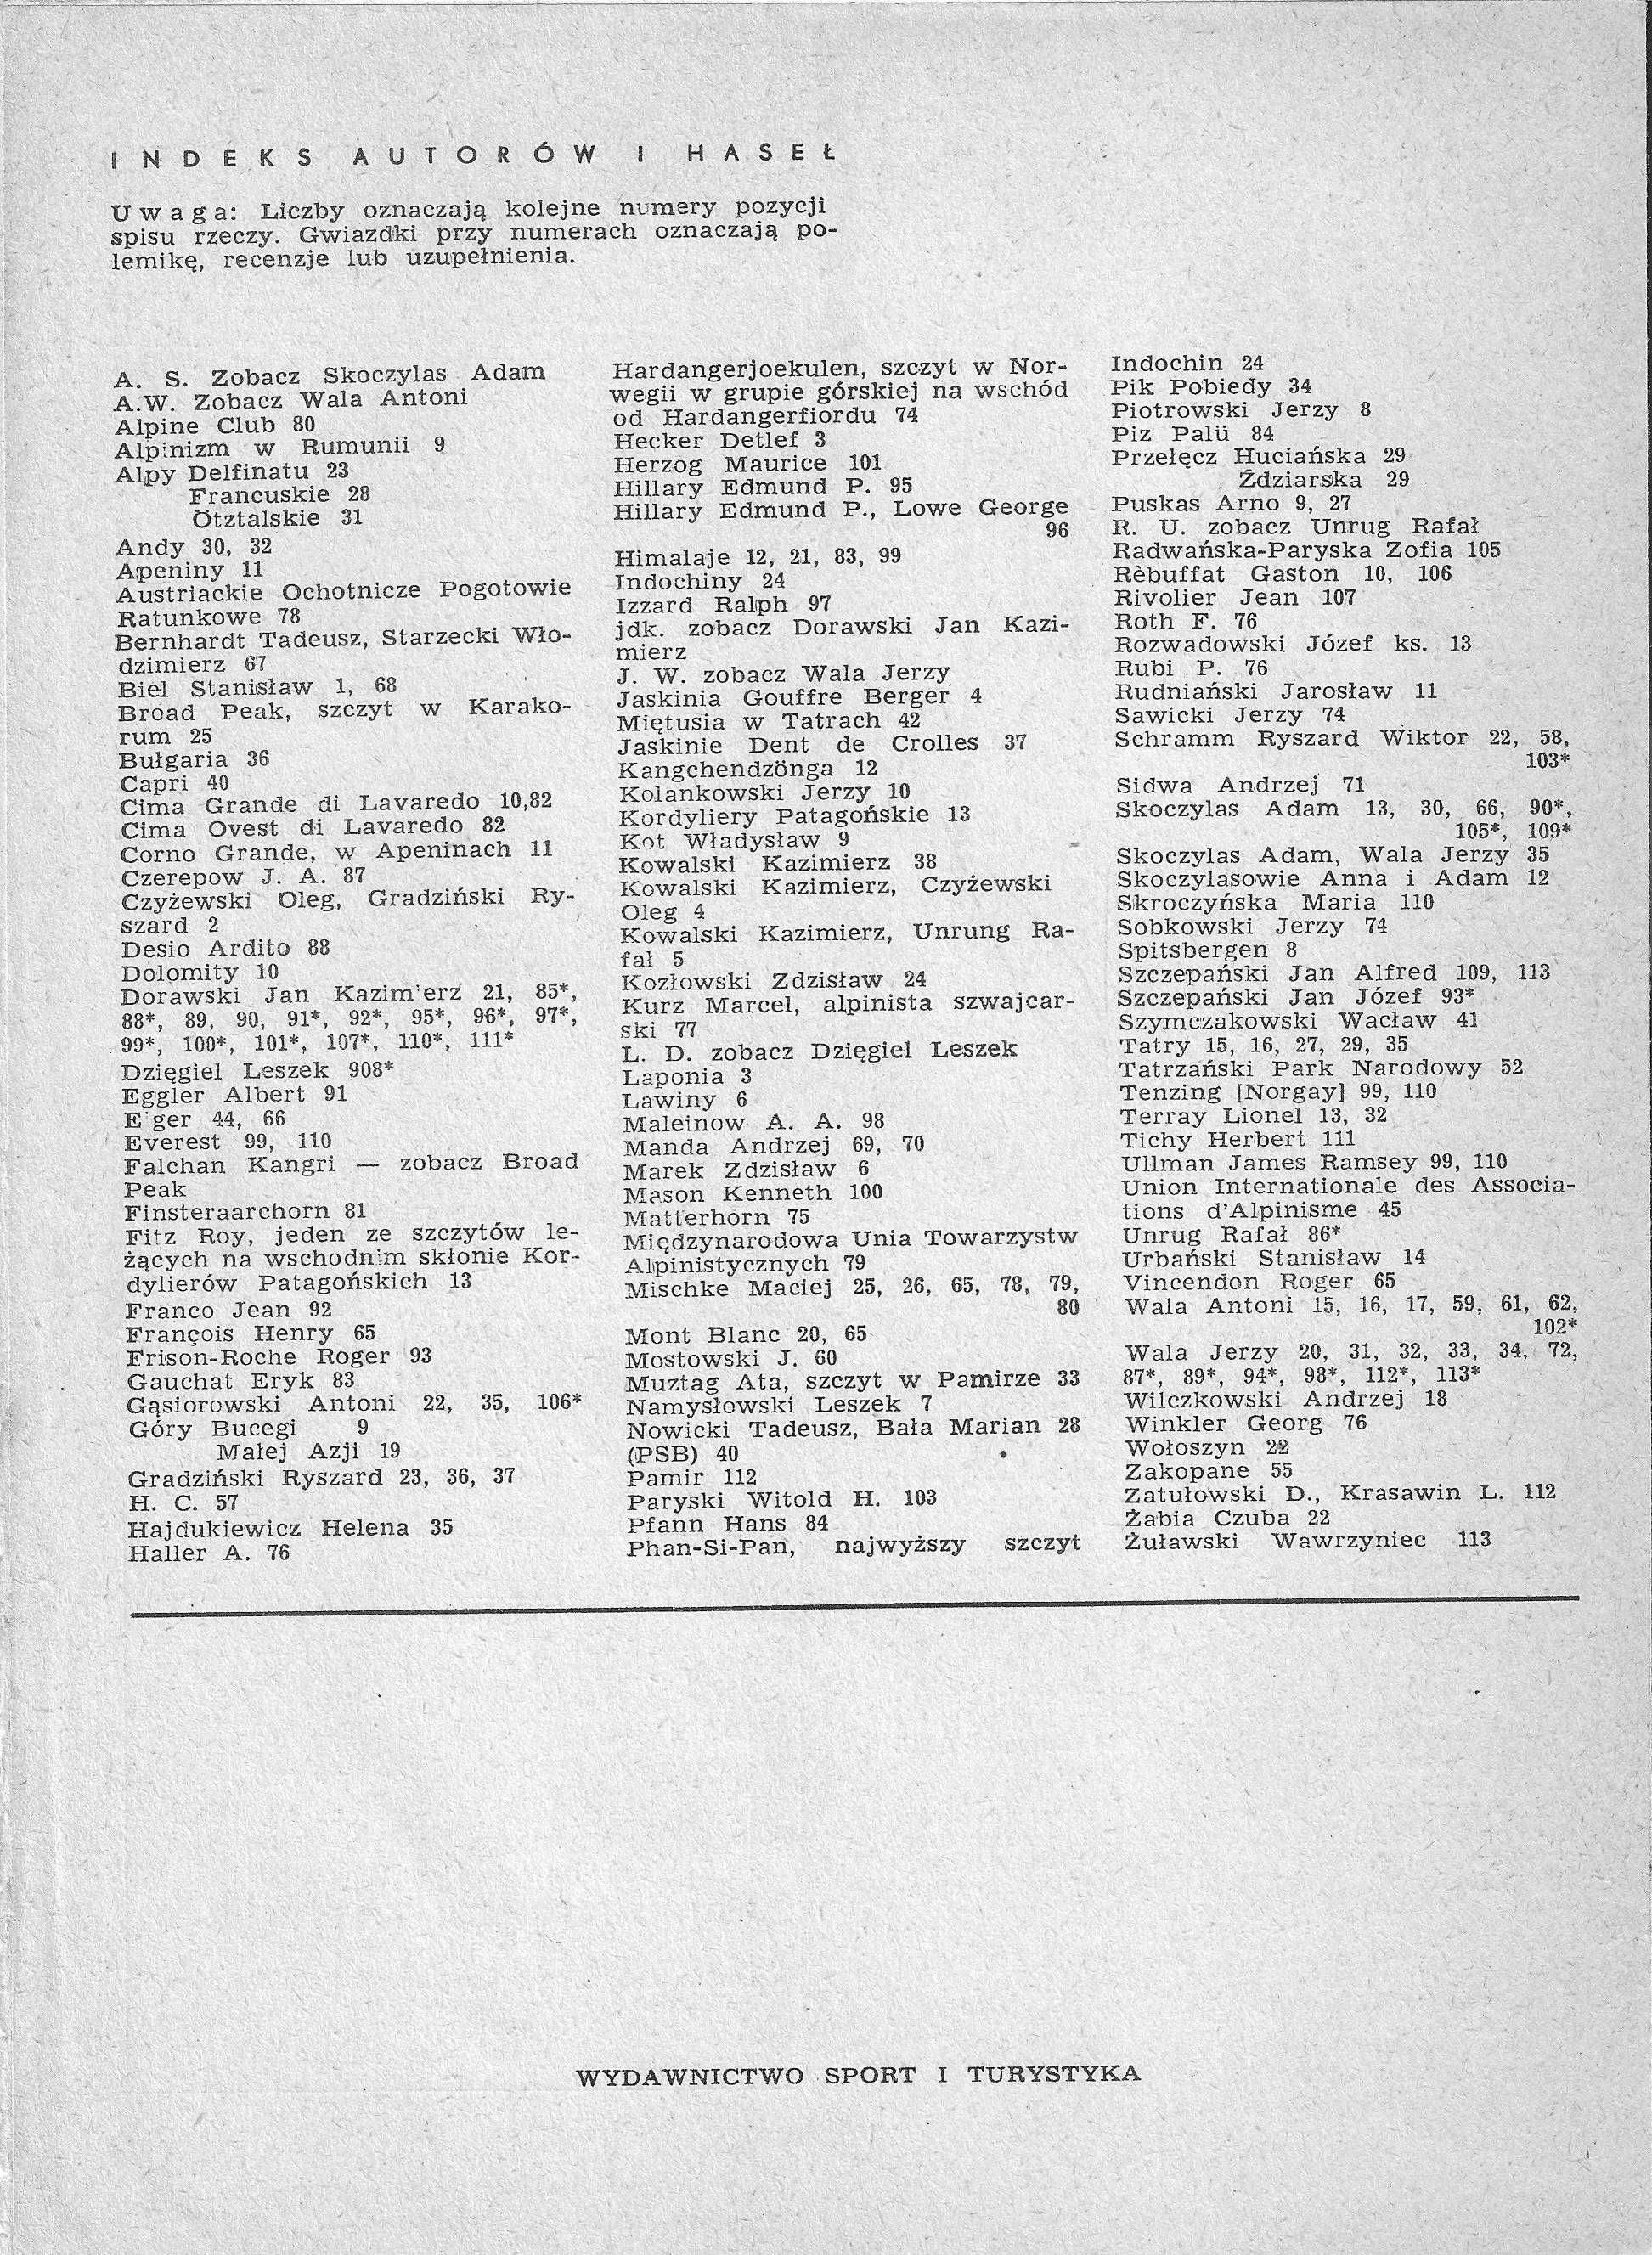 Taternik. Rocznik XXXIII. Nr 1, 2, 3, 4. Rok 1957